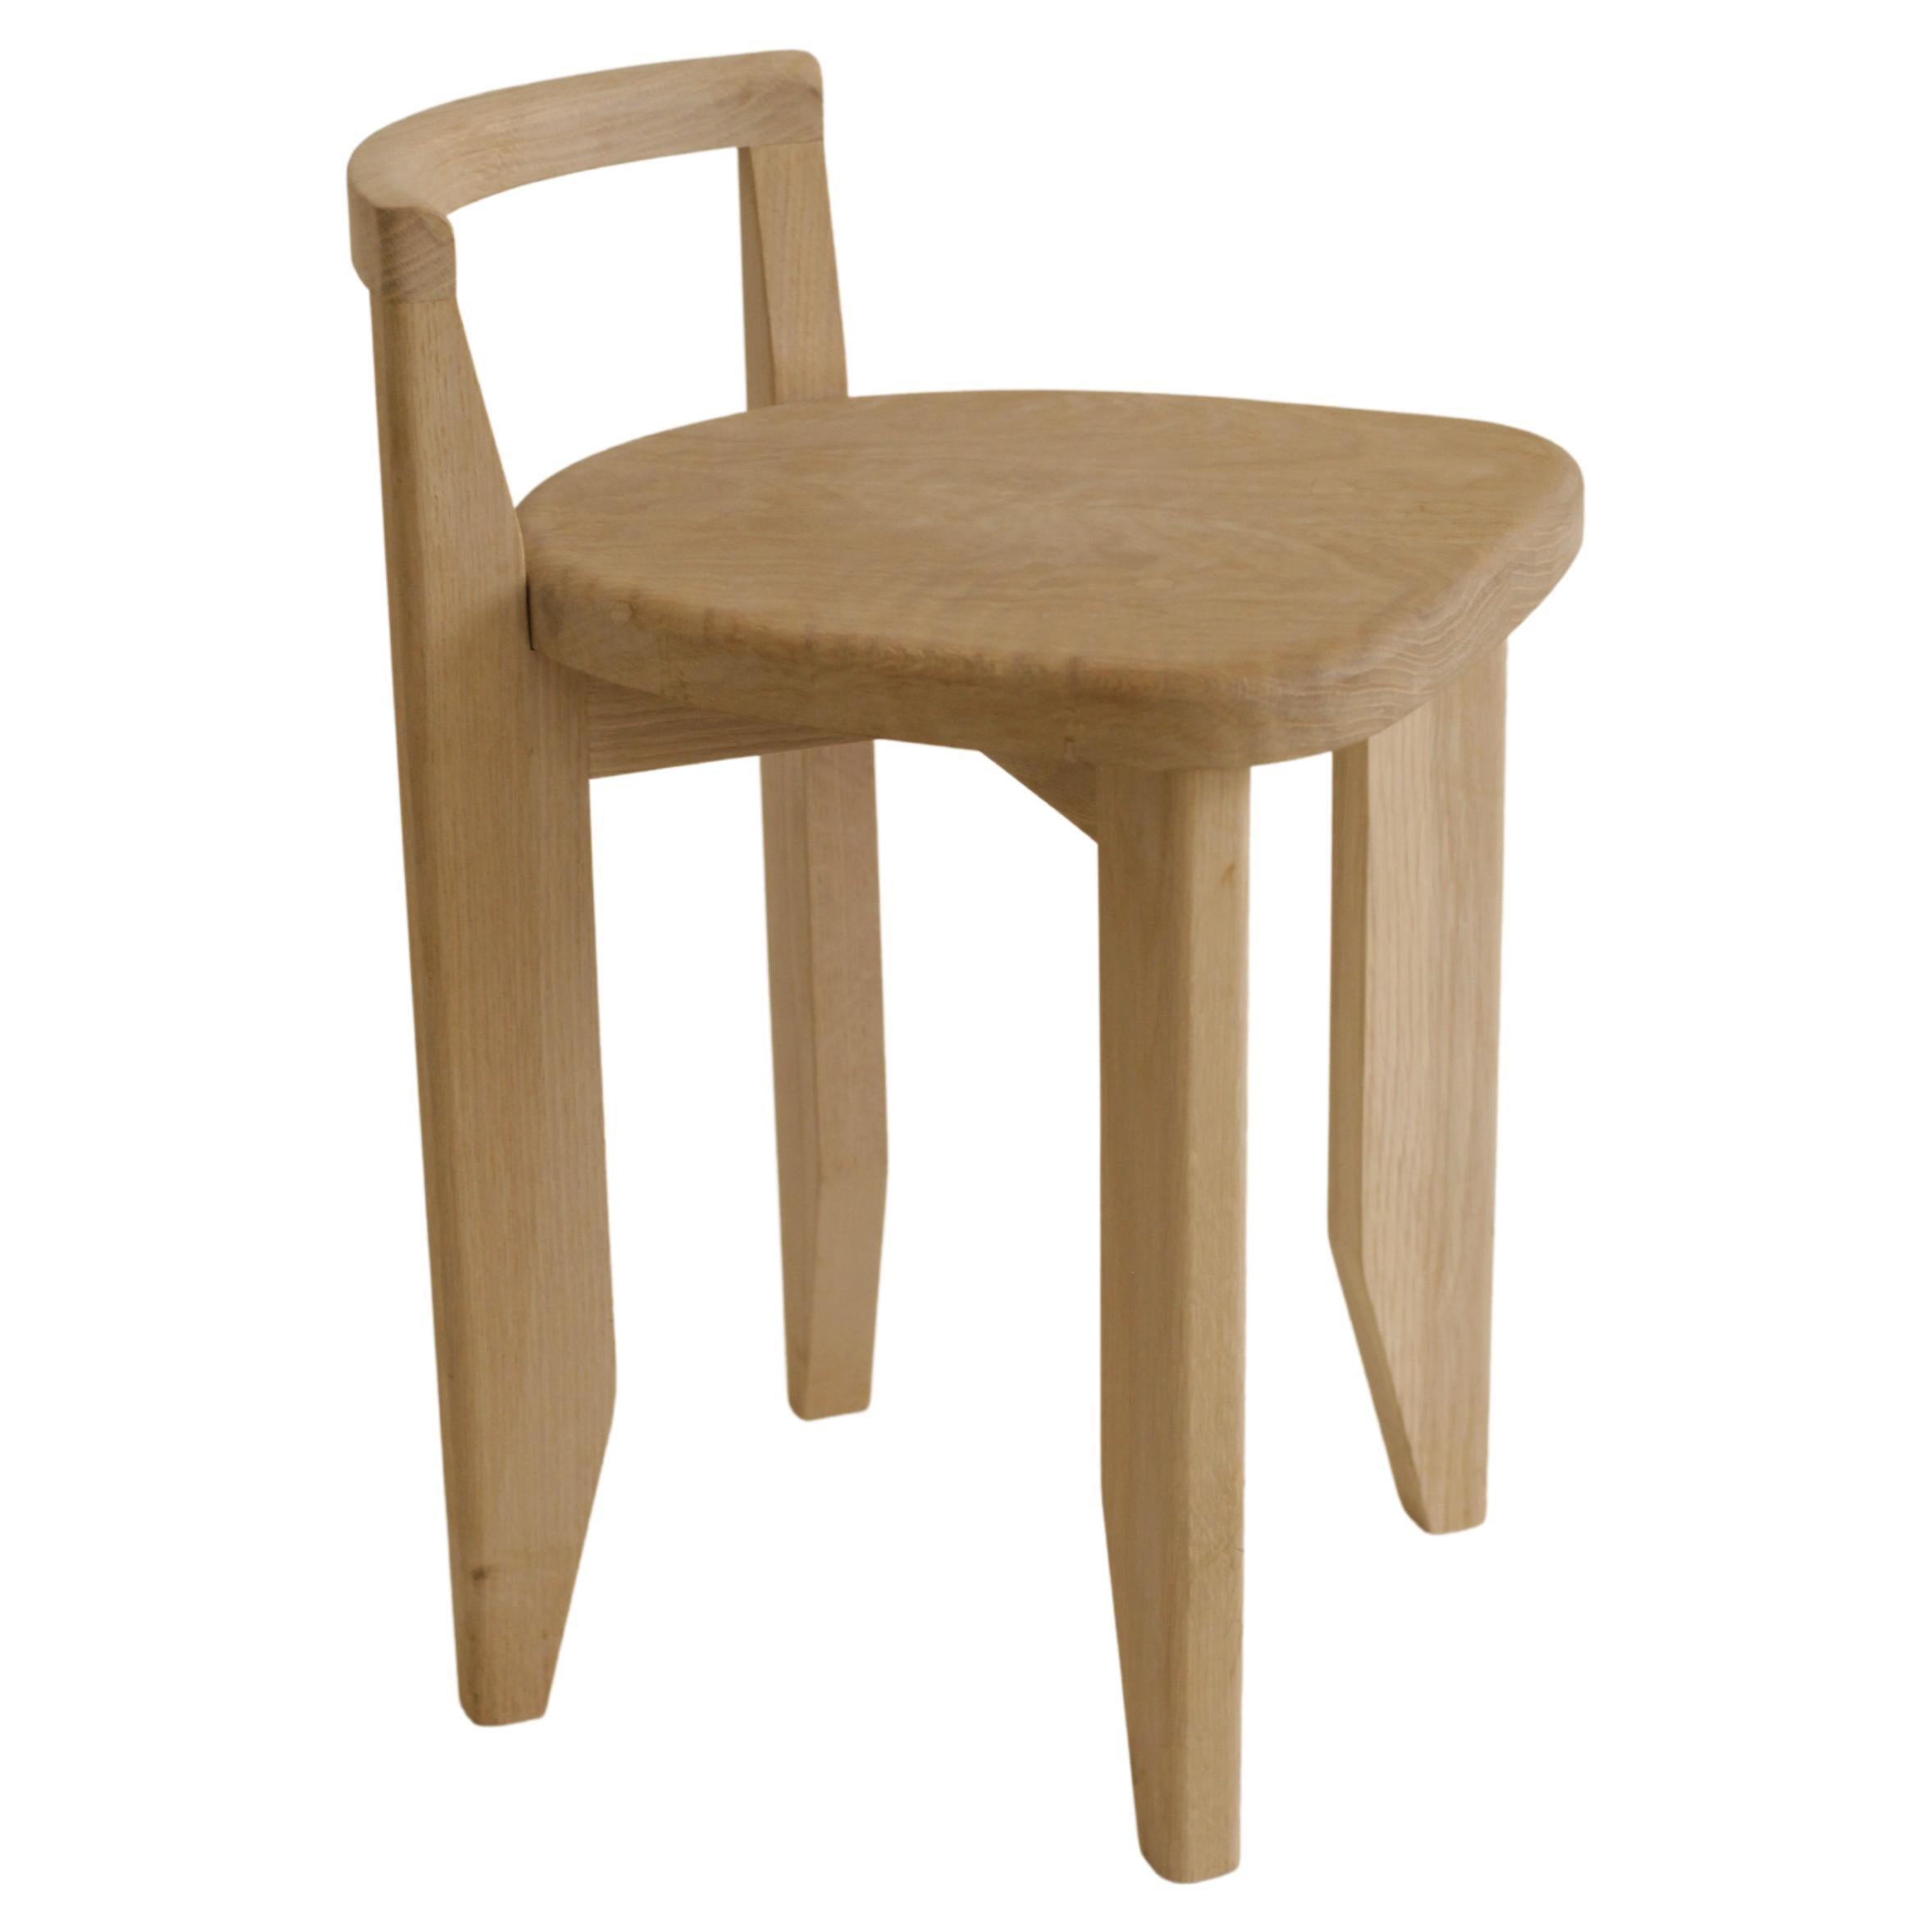 Low Back Chair / Stool in Solid Oak by Boyd & Allister